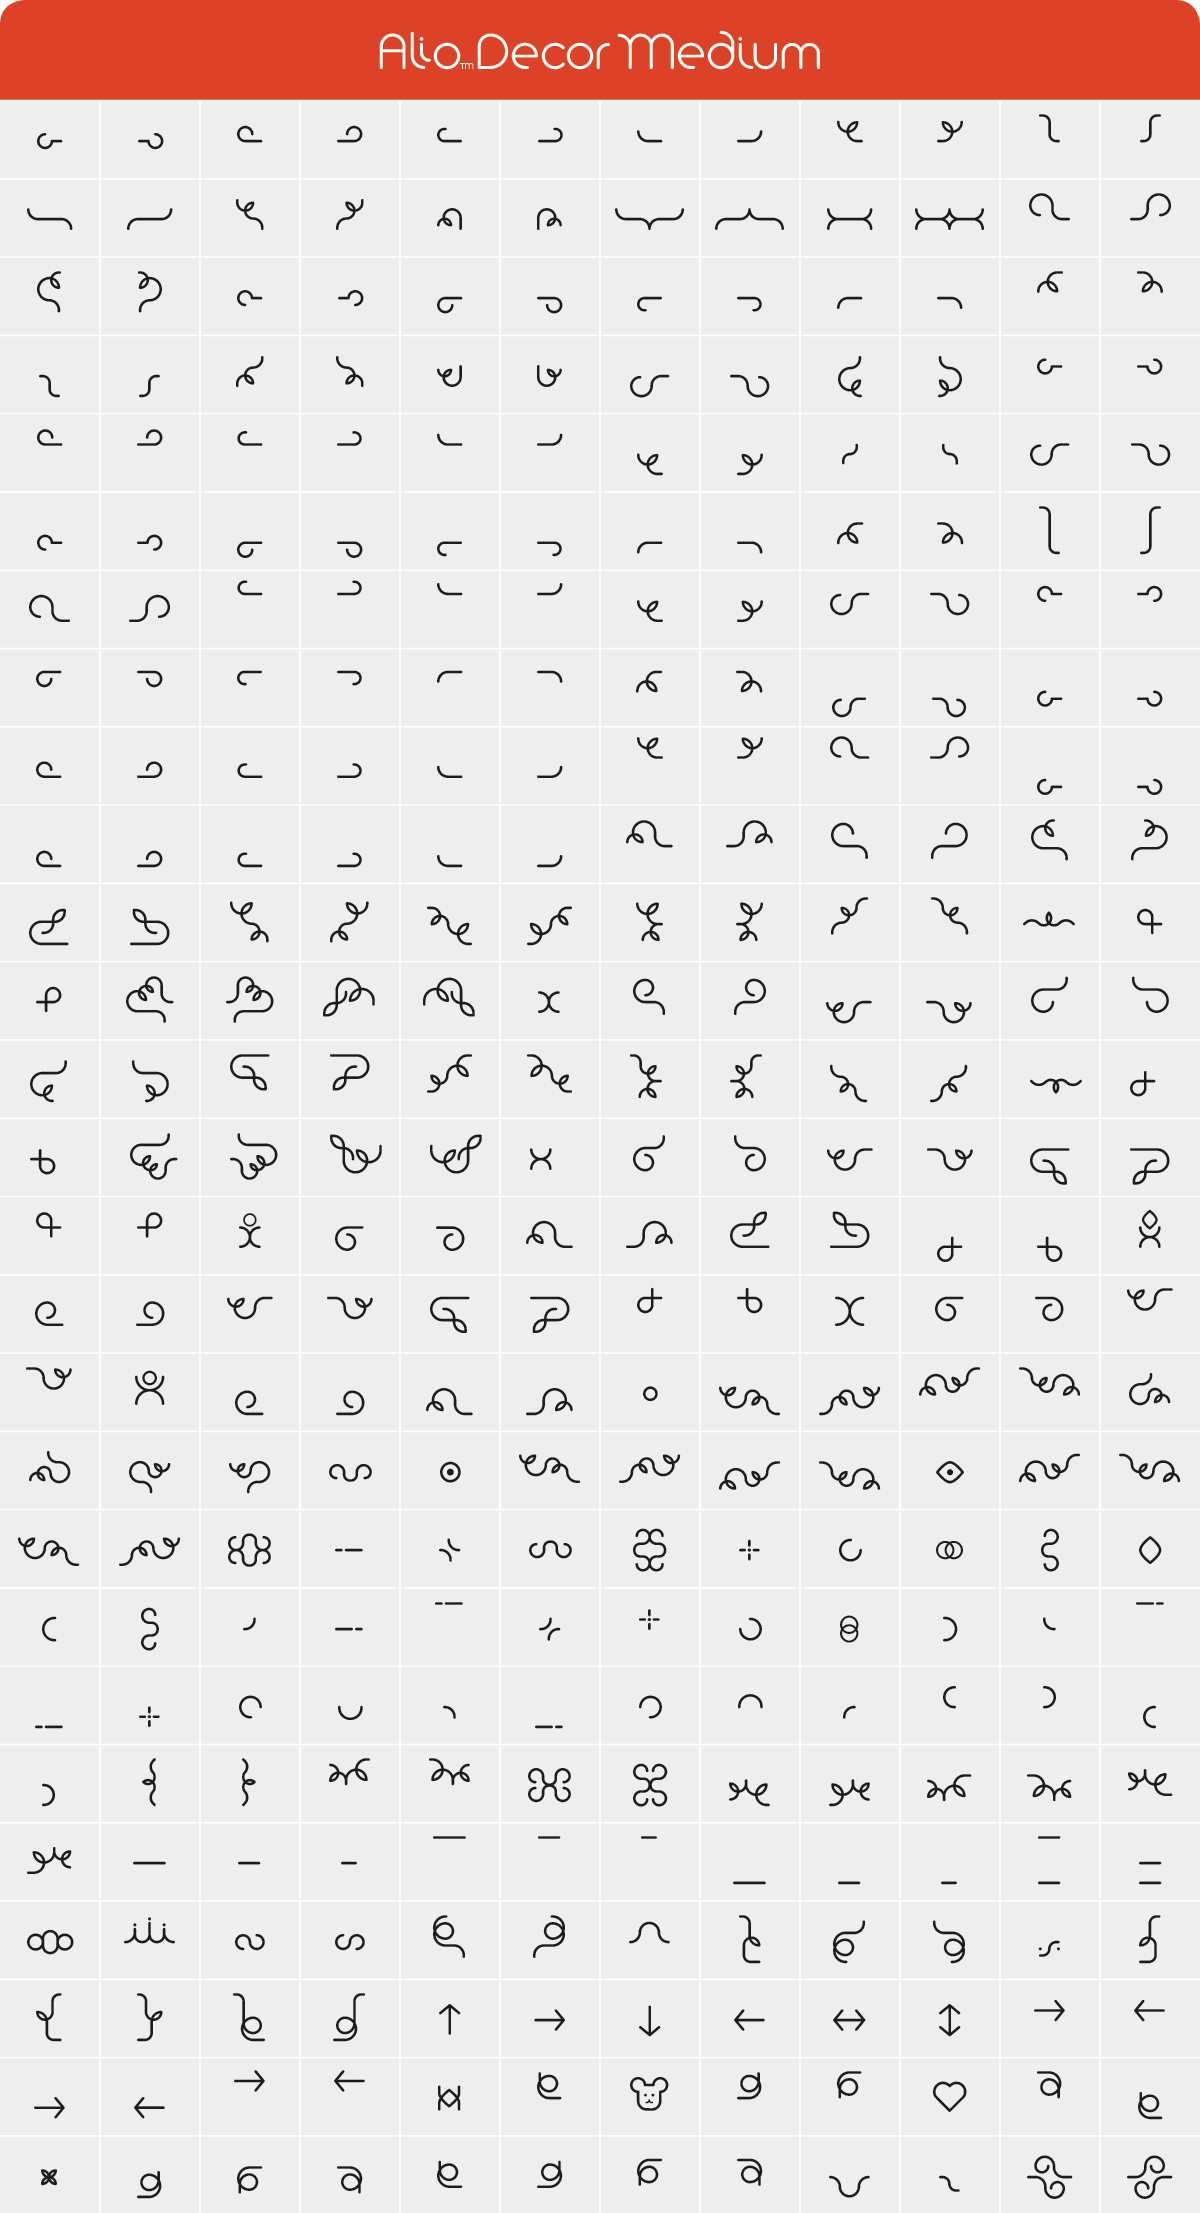 Alio Decor Medium Glyph Set